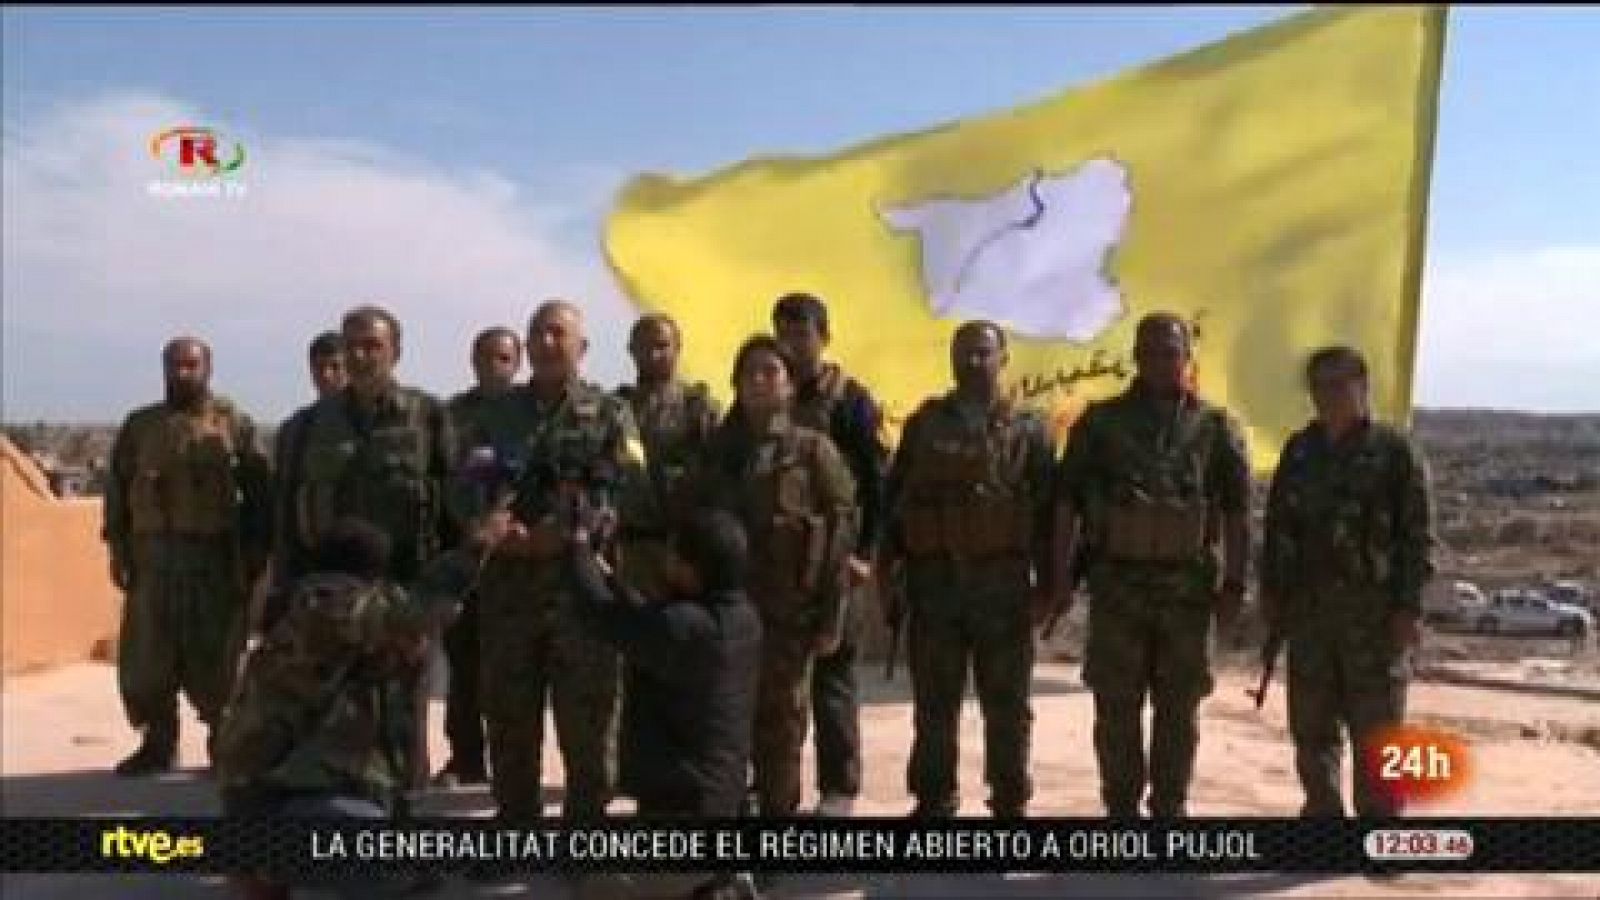 Guerra en Siria: Las Fuerzas kurdas anuncian el fin del "califato" del Estado Islámico en Siria